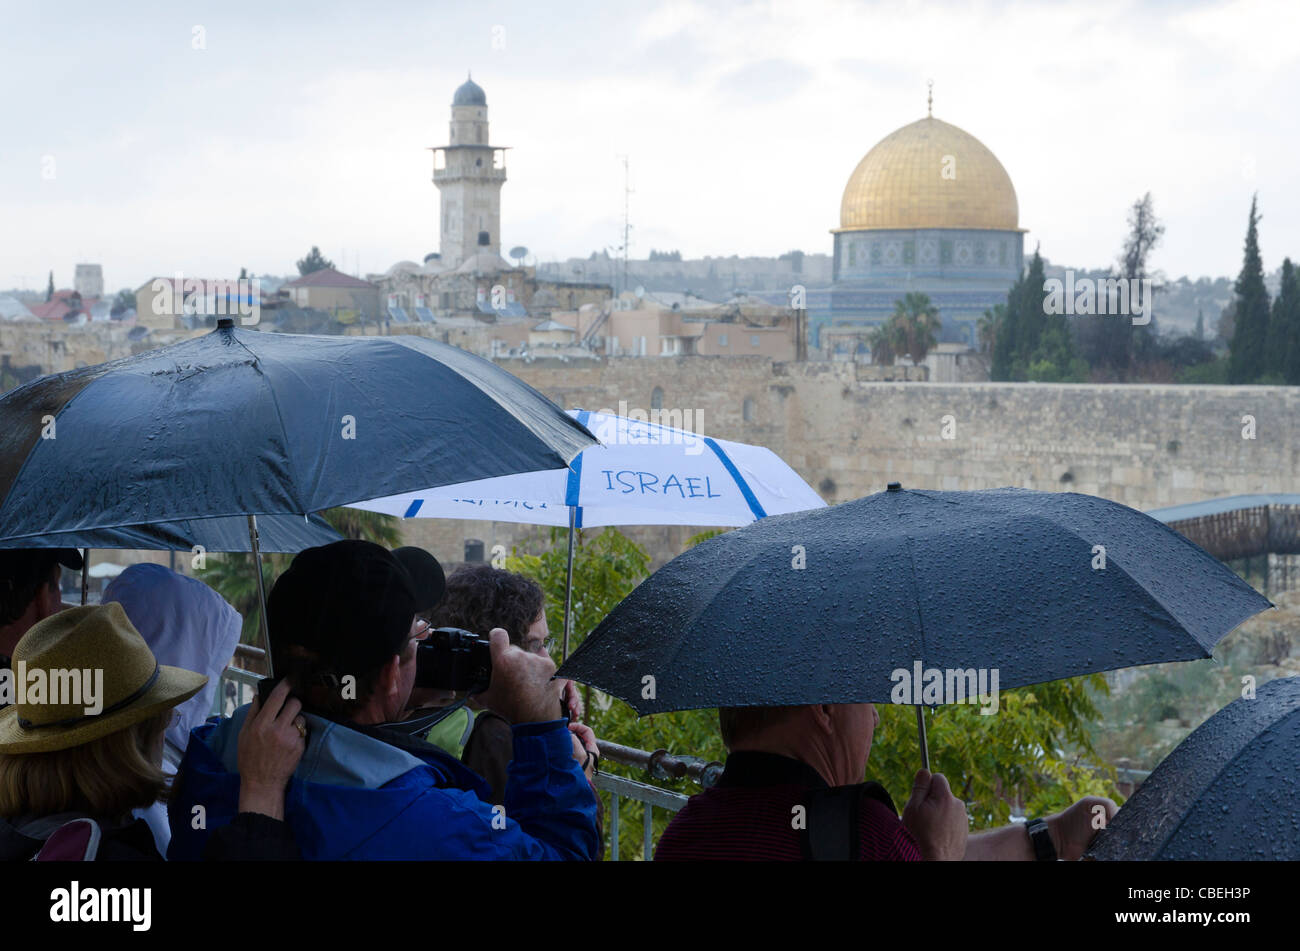 Les touristes à la recherche de l'hôtel Golden Dome un jour de pluie. Vieille ville de Jérusalem Israël. Banque D'Images